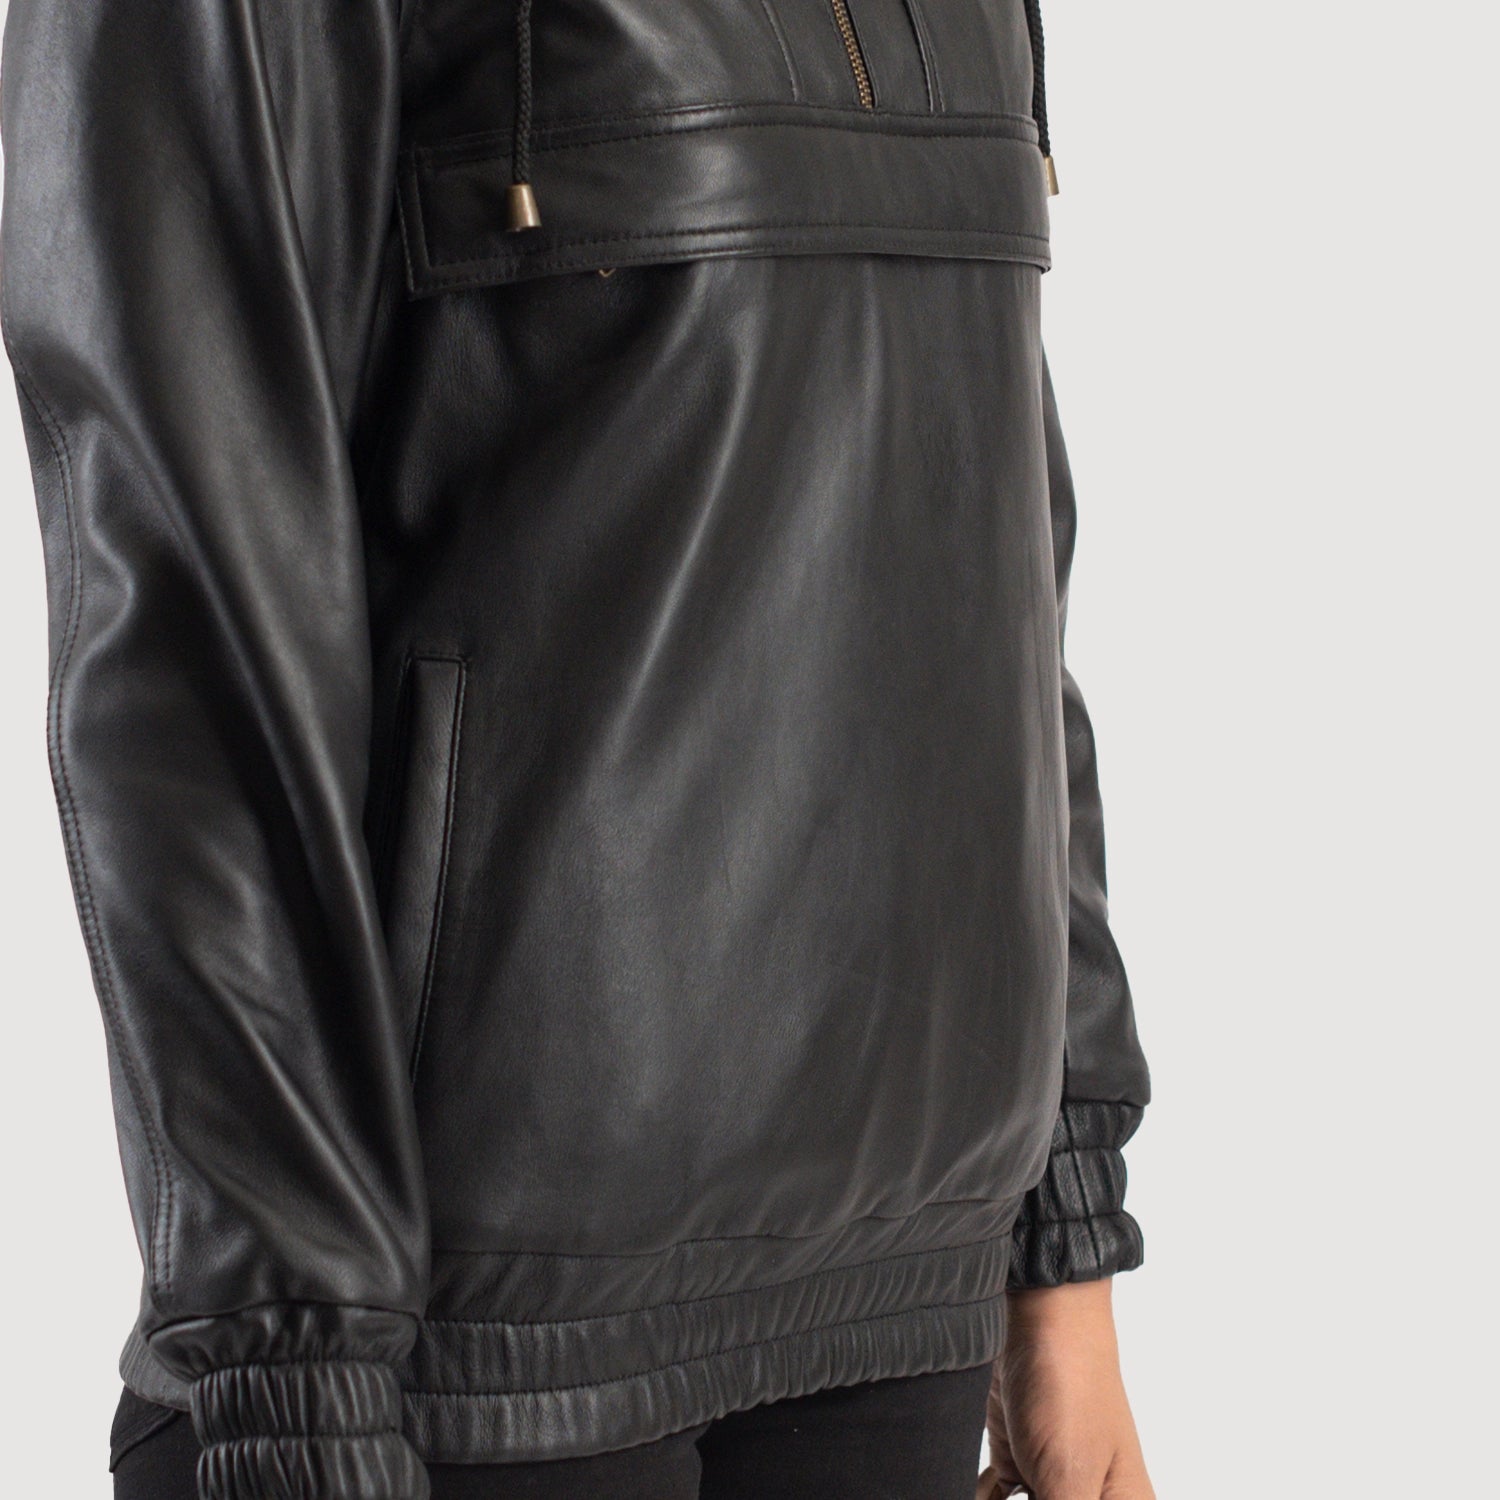 Zest Black Hooded Leather Pullover Jacket